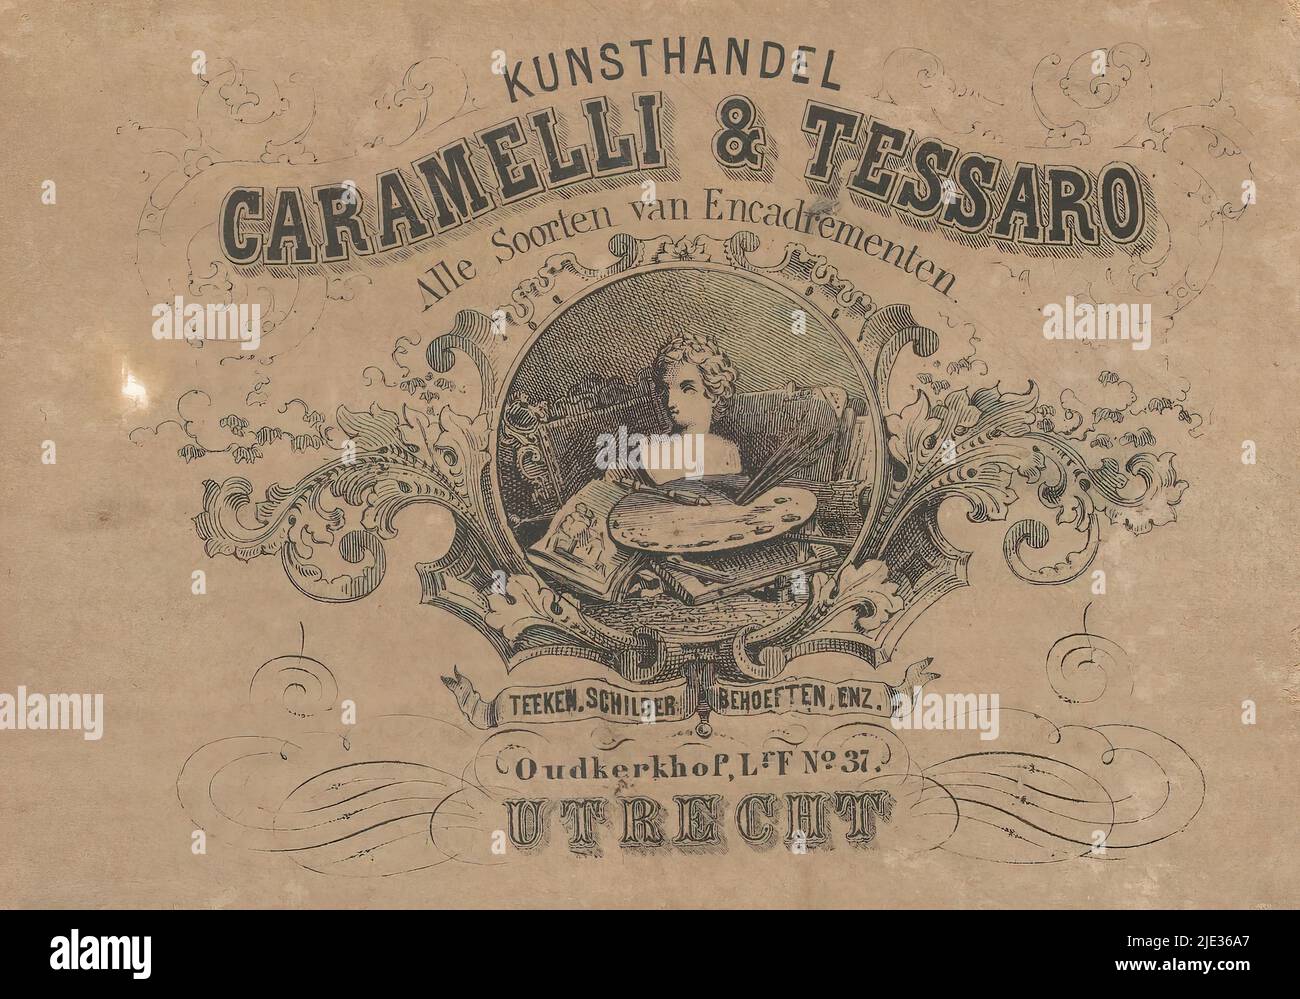 Label du marchand d'art Caramelli & Tessaro à Utrecht, Cartouche avec des matériaux de peinture, un buste et une bordure décorative., imprimerie: Anonyme, 1912 - 1924, papier, hauteur 84 mm × largeur 118 mm Banque D'Images